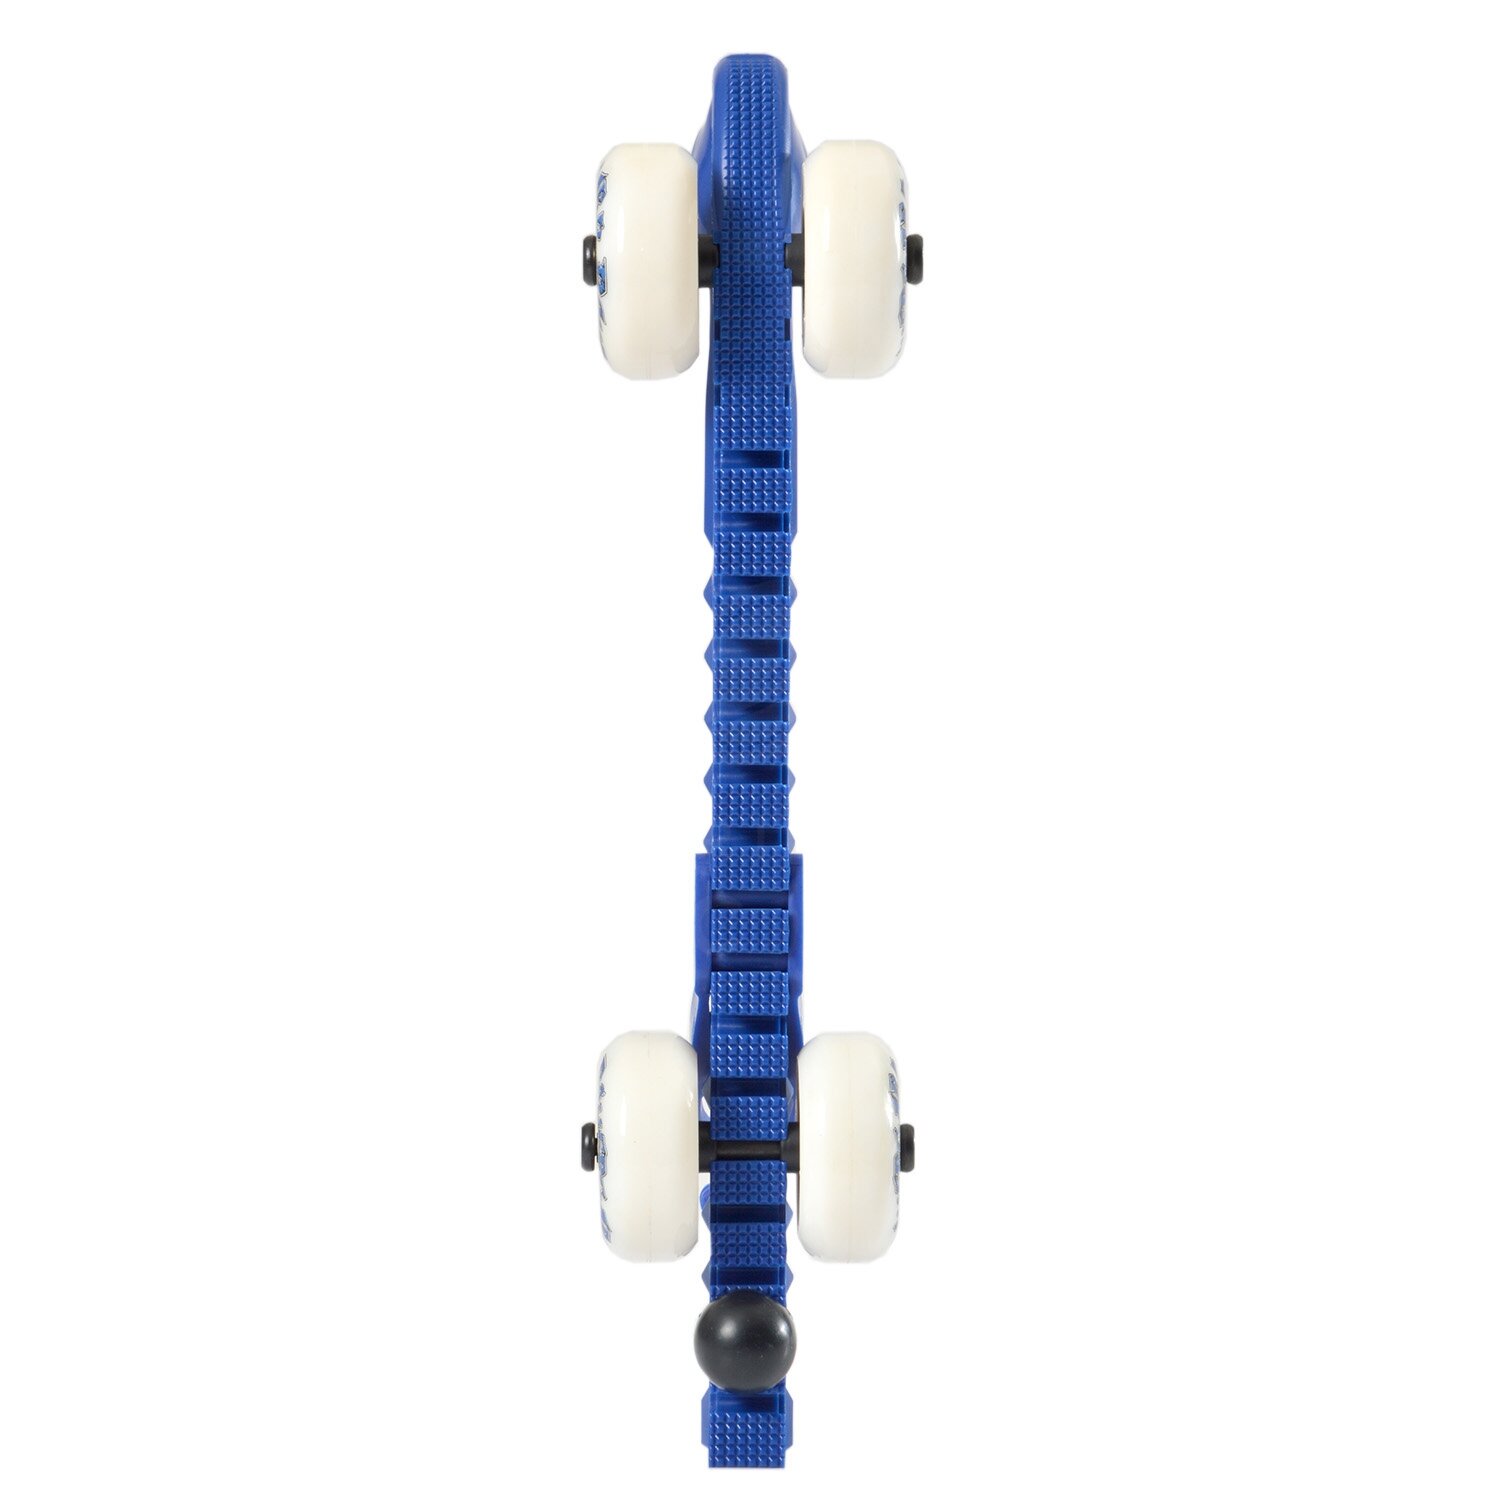 Rollerguard Kufenschoner mit Rollen größenverstellbar 3 Farben 78701 blade guard 